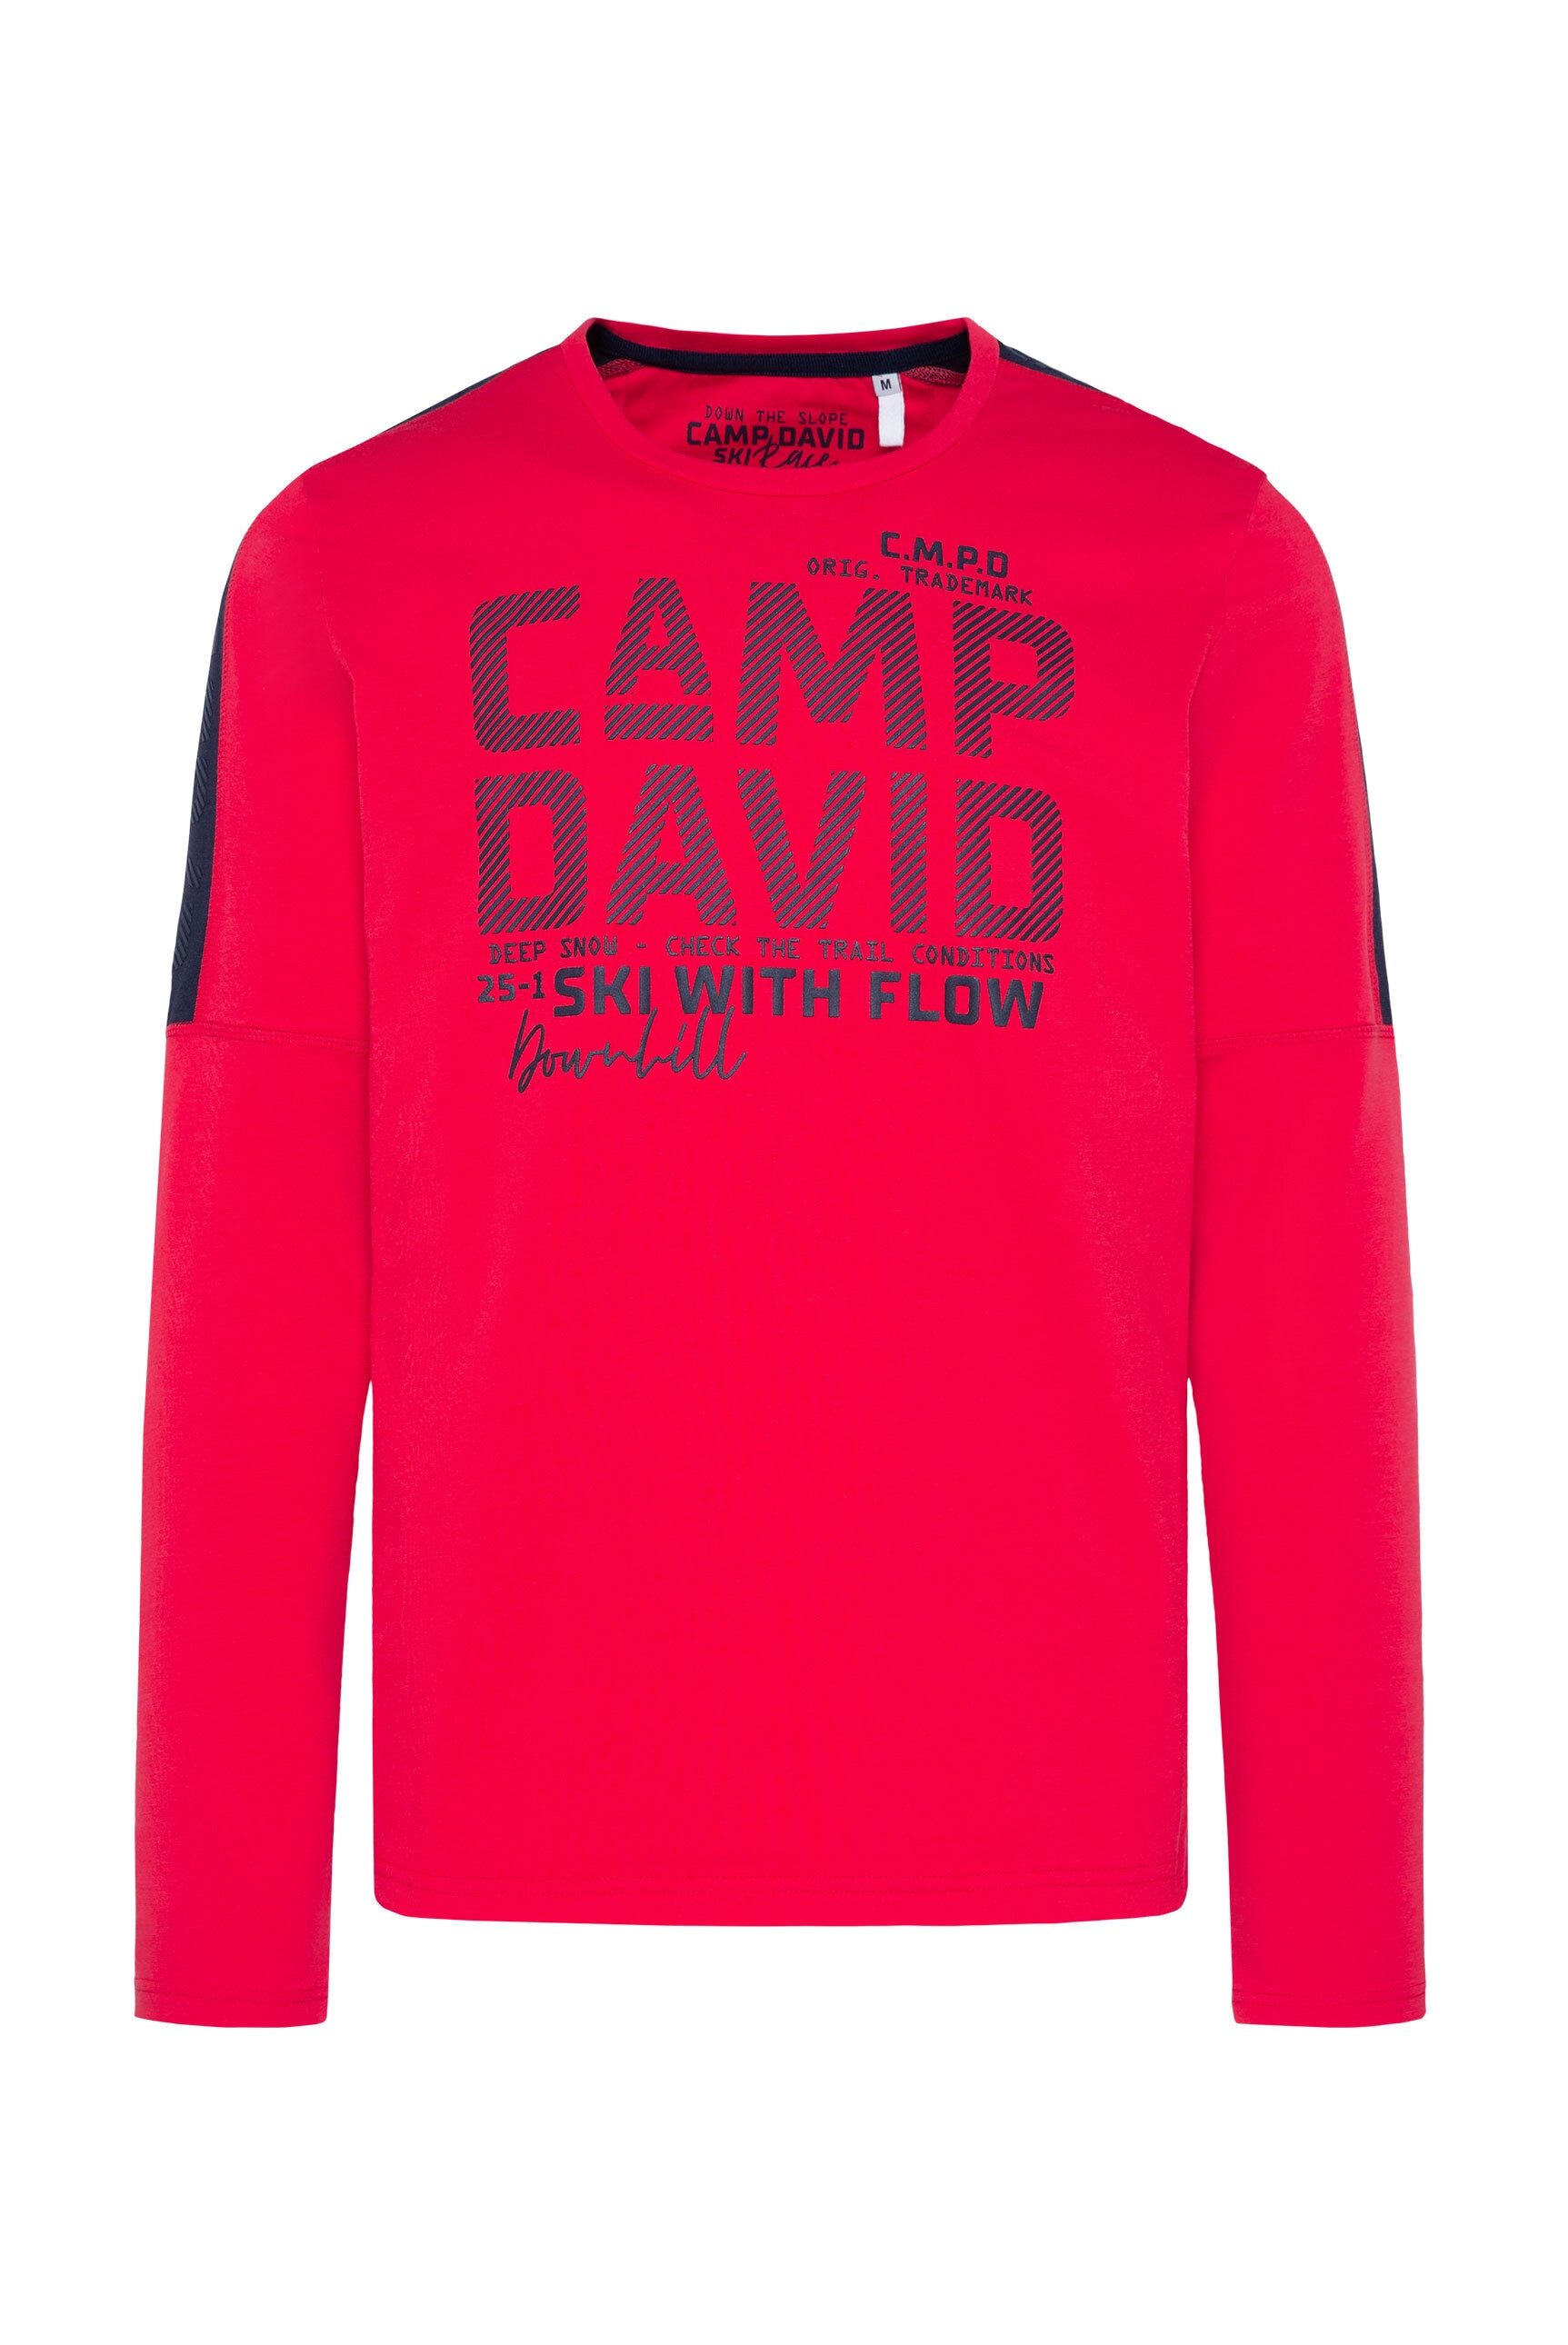 CAMP DAVID Rundhalsshirt, mit Teilungsnähten an den Seiten kaufen